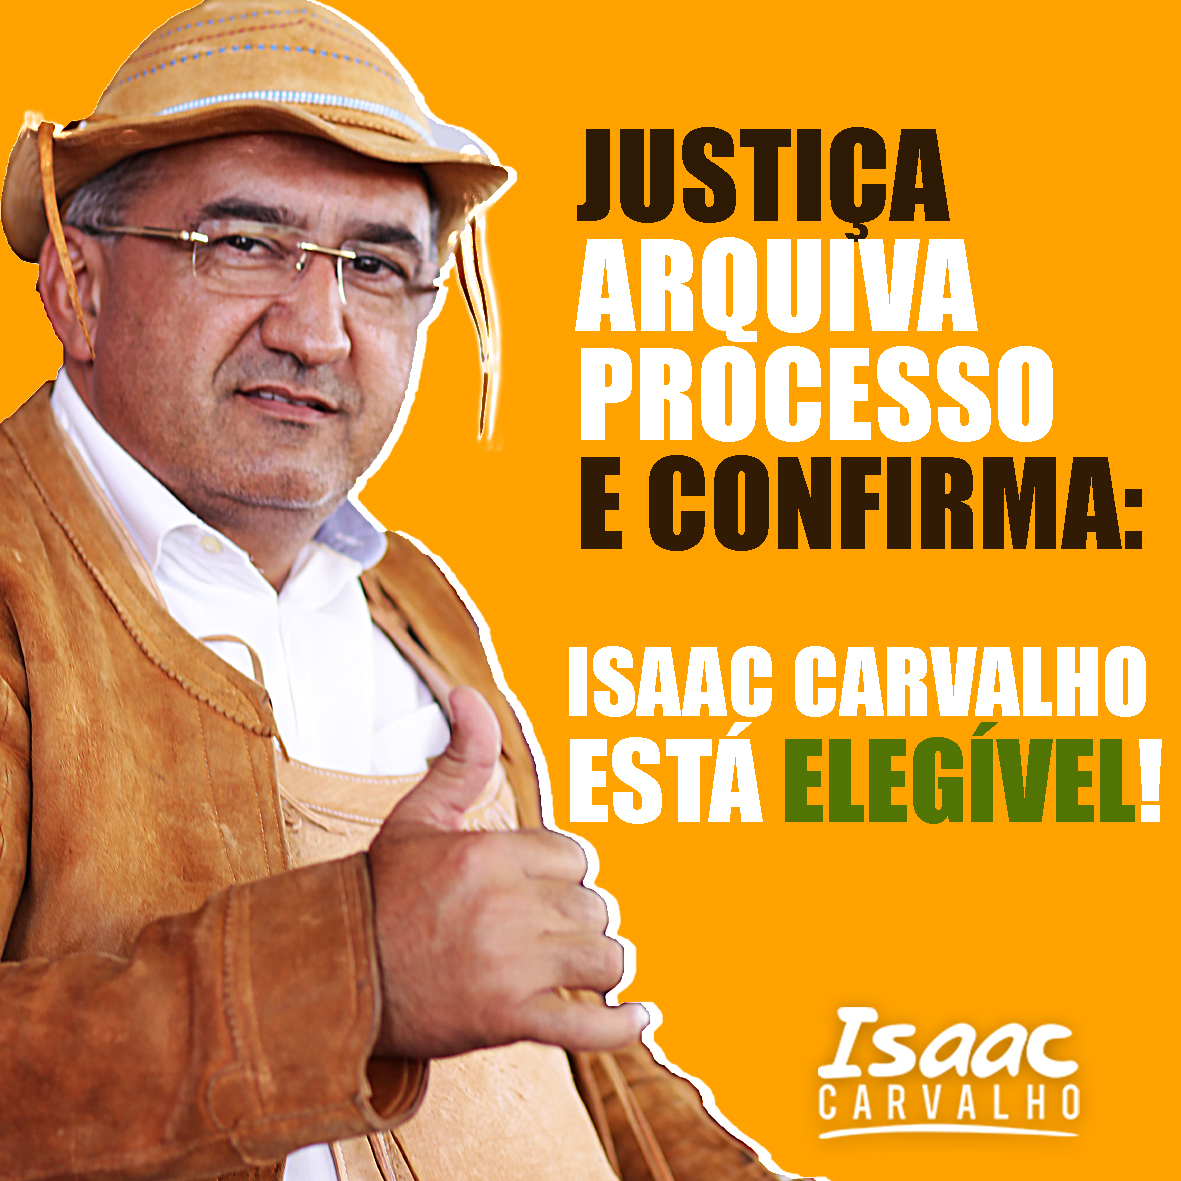 Justiça arquiva processo e confirma que Isaac Carvalho está elegível, informa assessoria